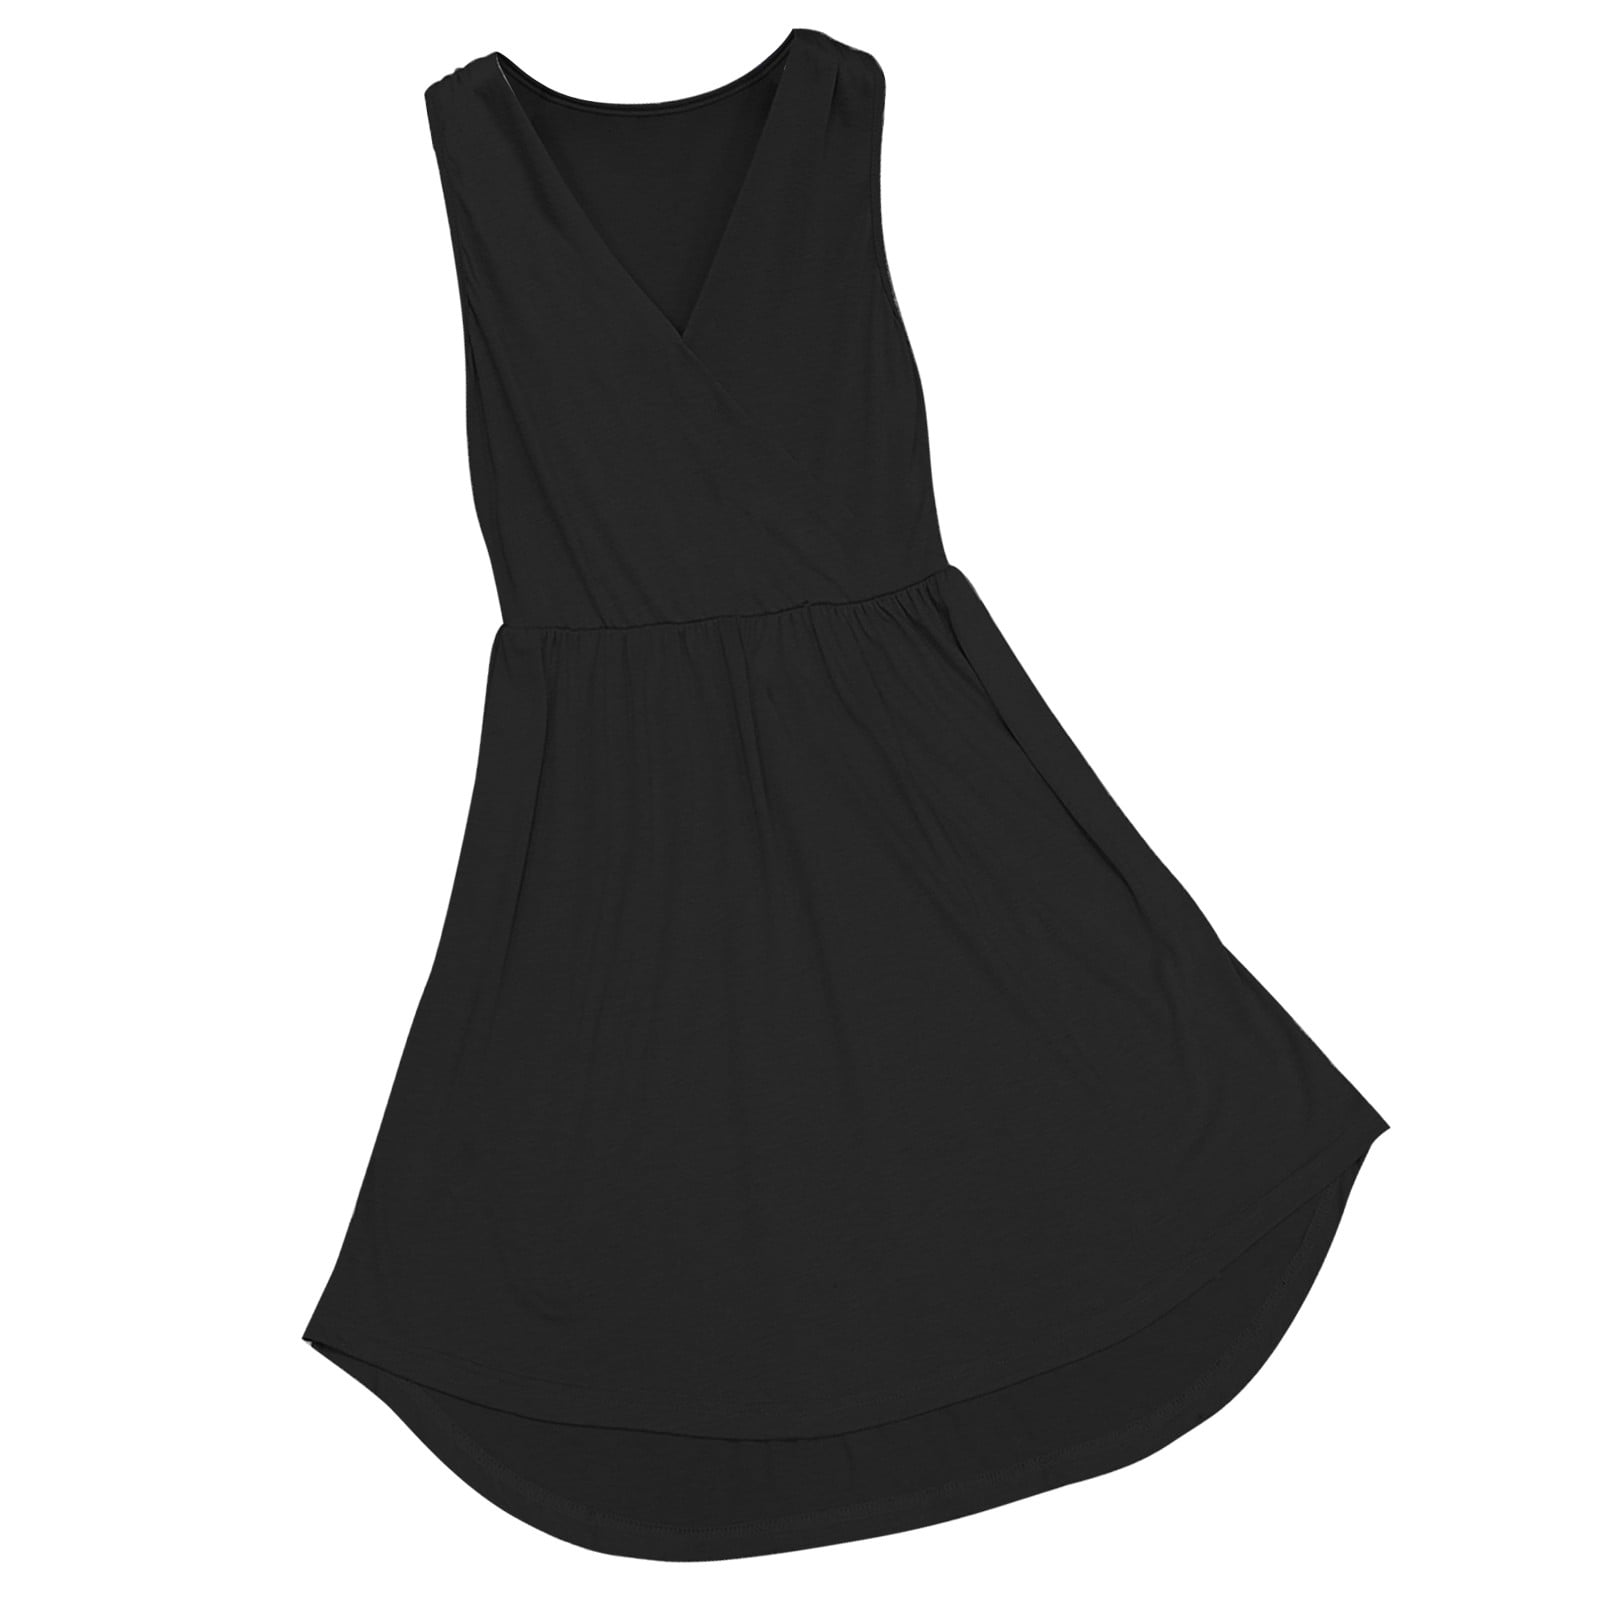 Kiittyyyy formal Dresses for Women In Black And Gold Women's Sleeveless ...